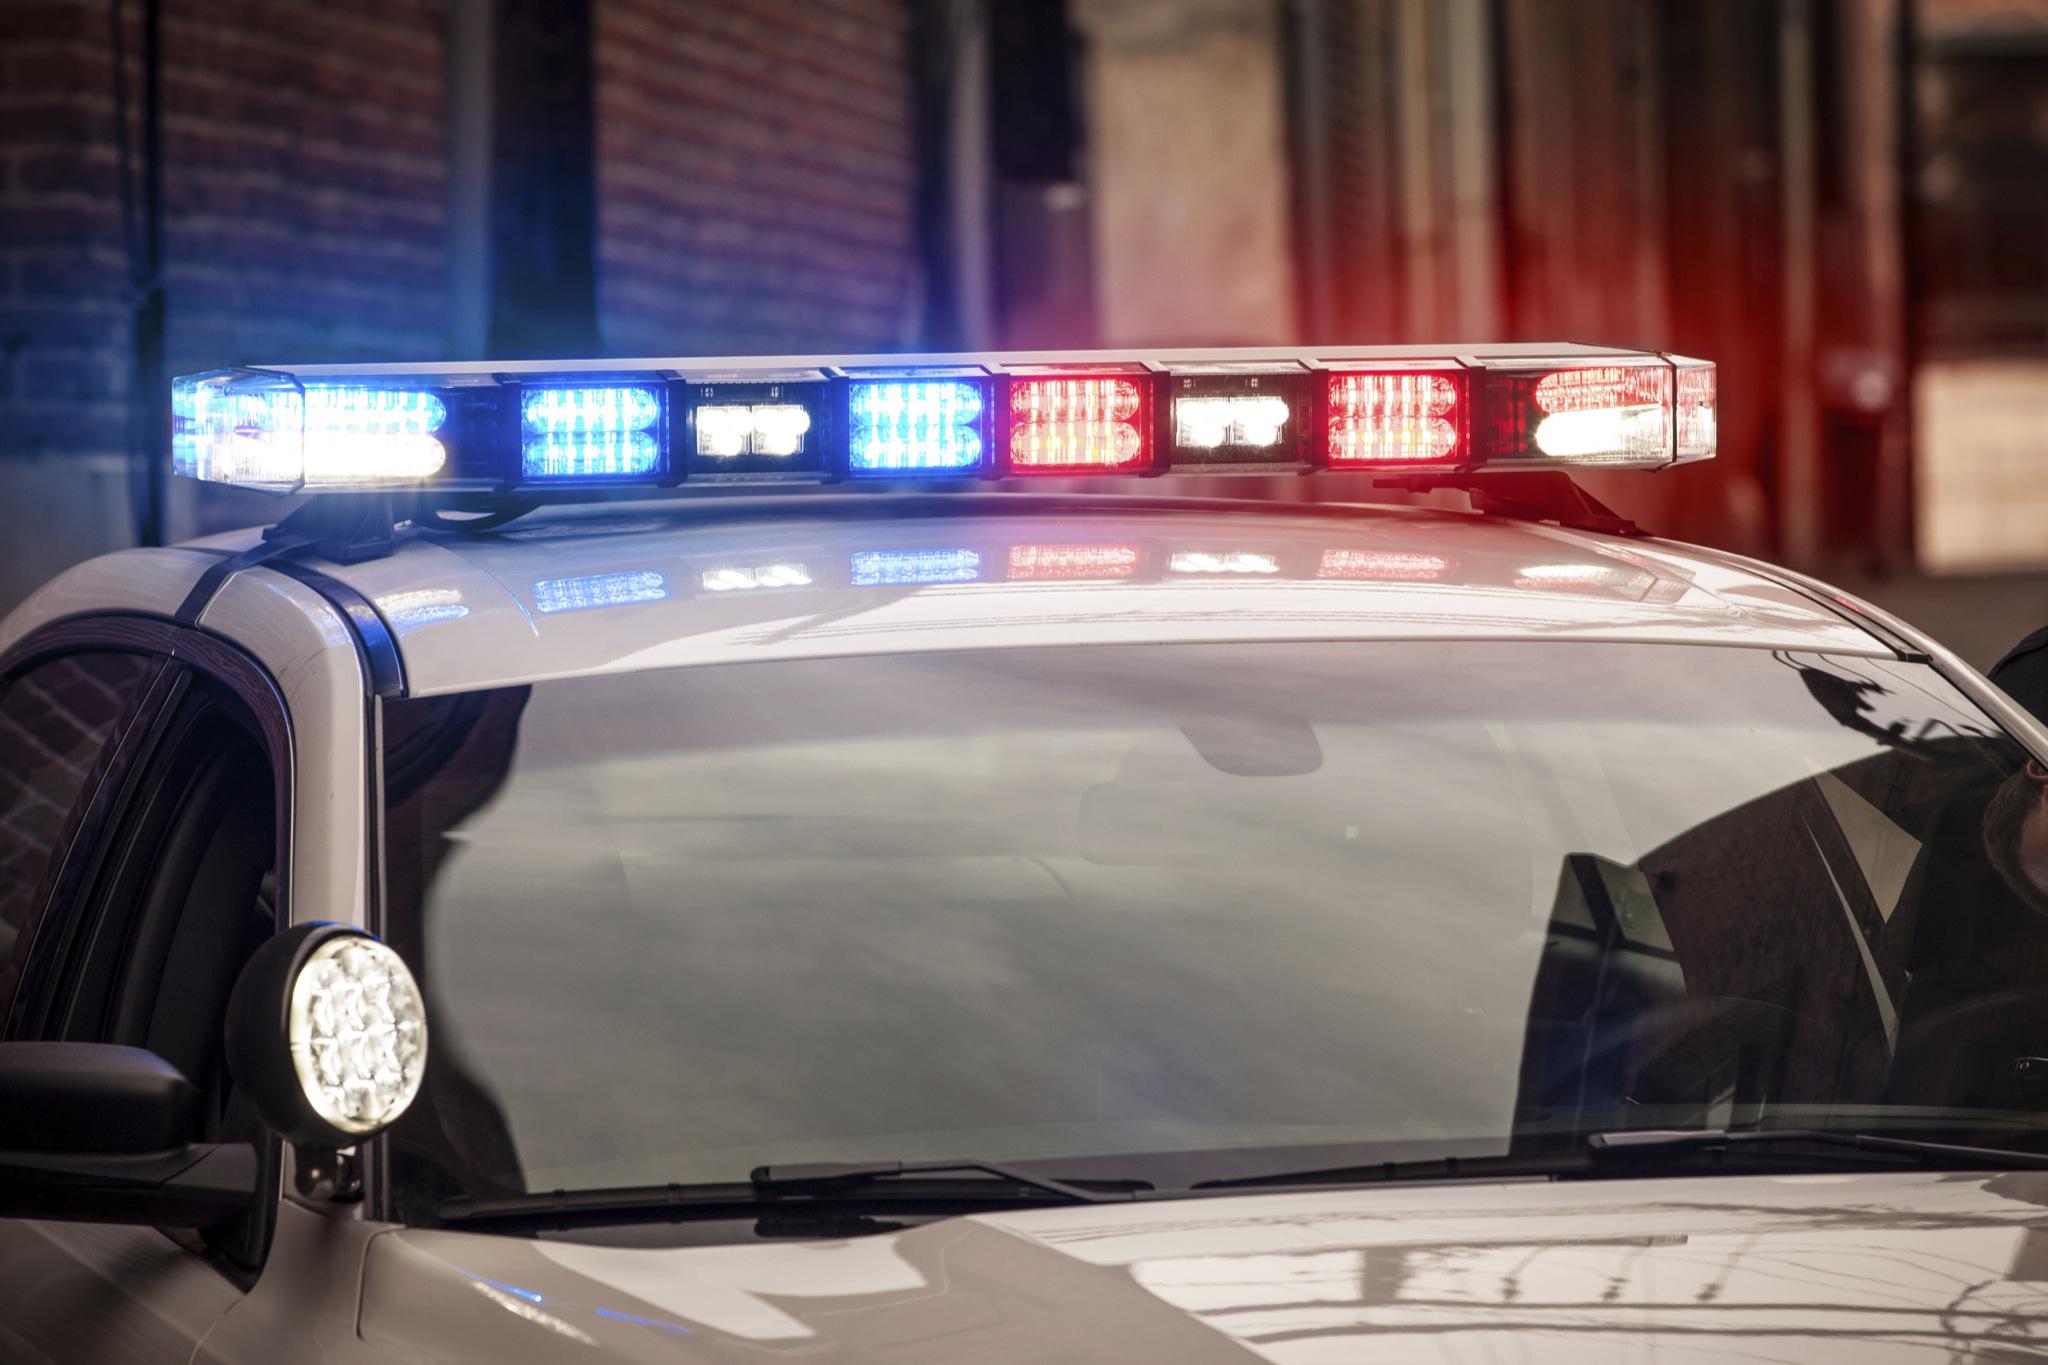 旧金山警方称司机携带2万美元的盗窃零售商品被发现